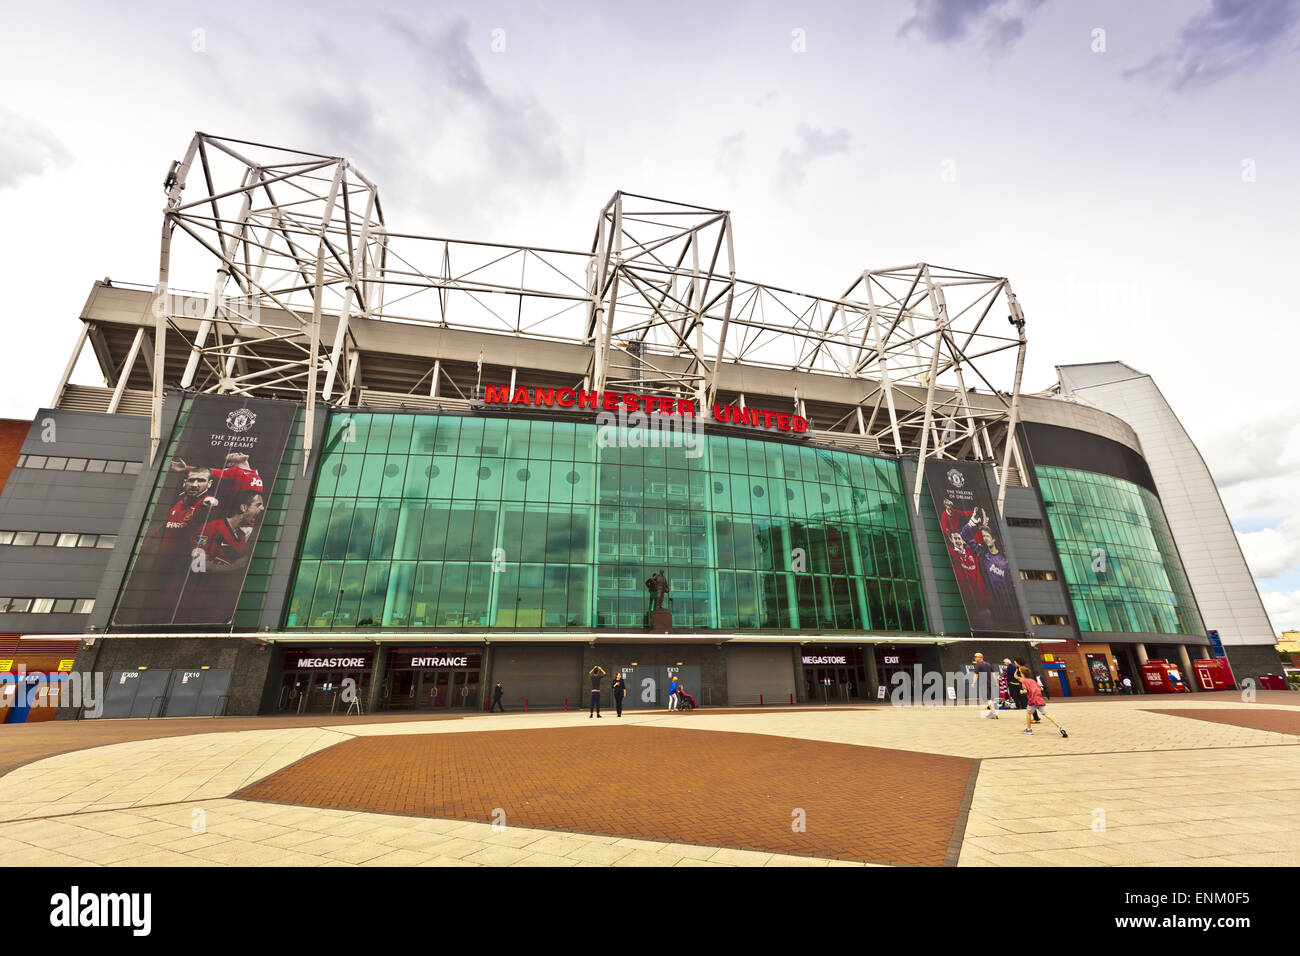 Das Stadion Old Trafford ist Heimat von Manchester United, eines der reichsten und am meisten verbreitete Fußball-der Welt Teams. Stockfoto